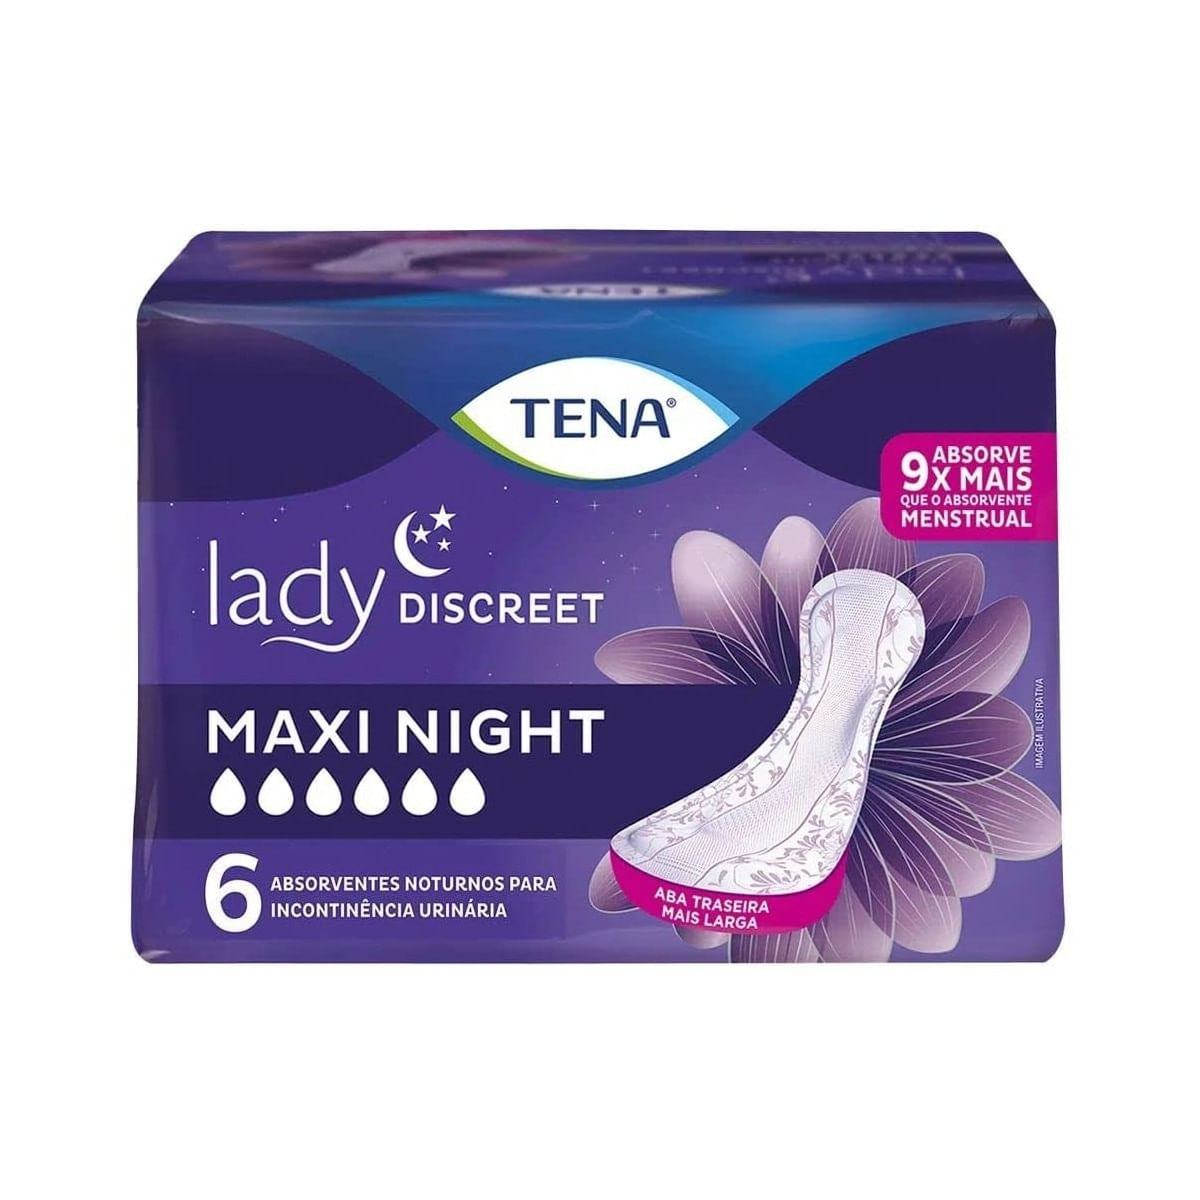 TENA Discreet - Maxi - Night - 3 Packs of 6